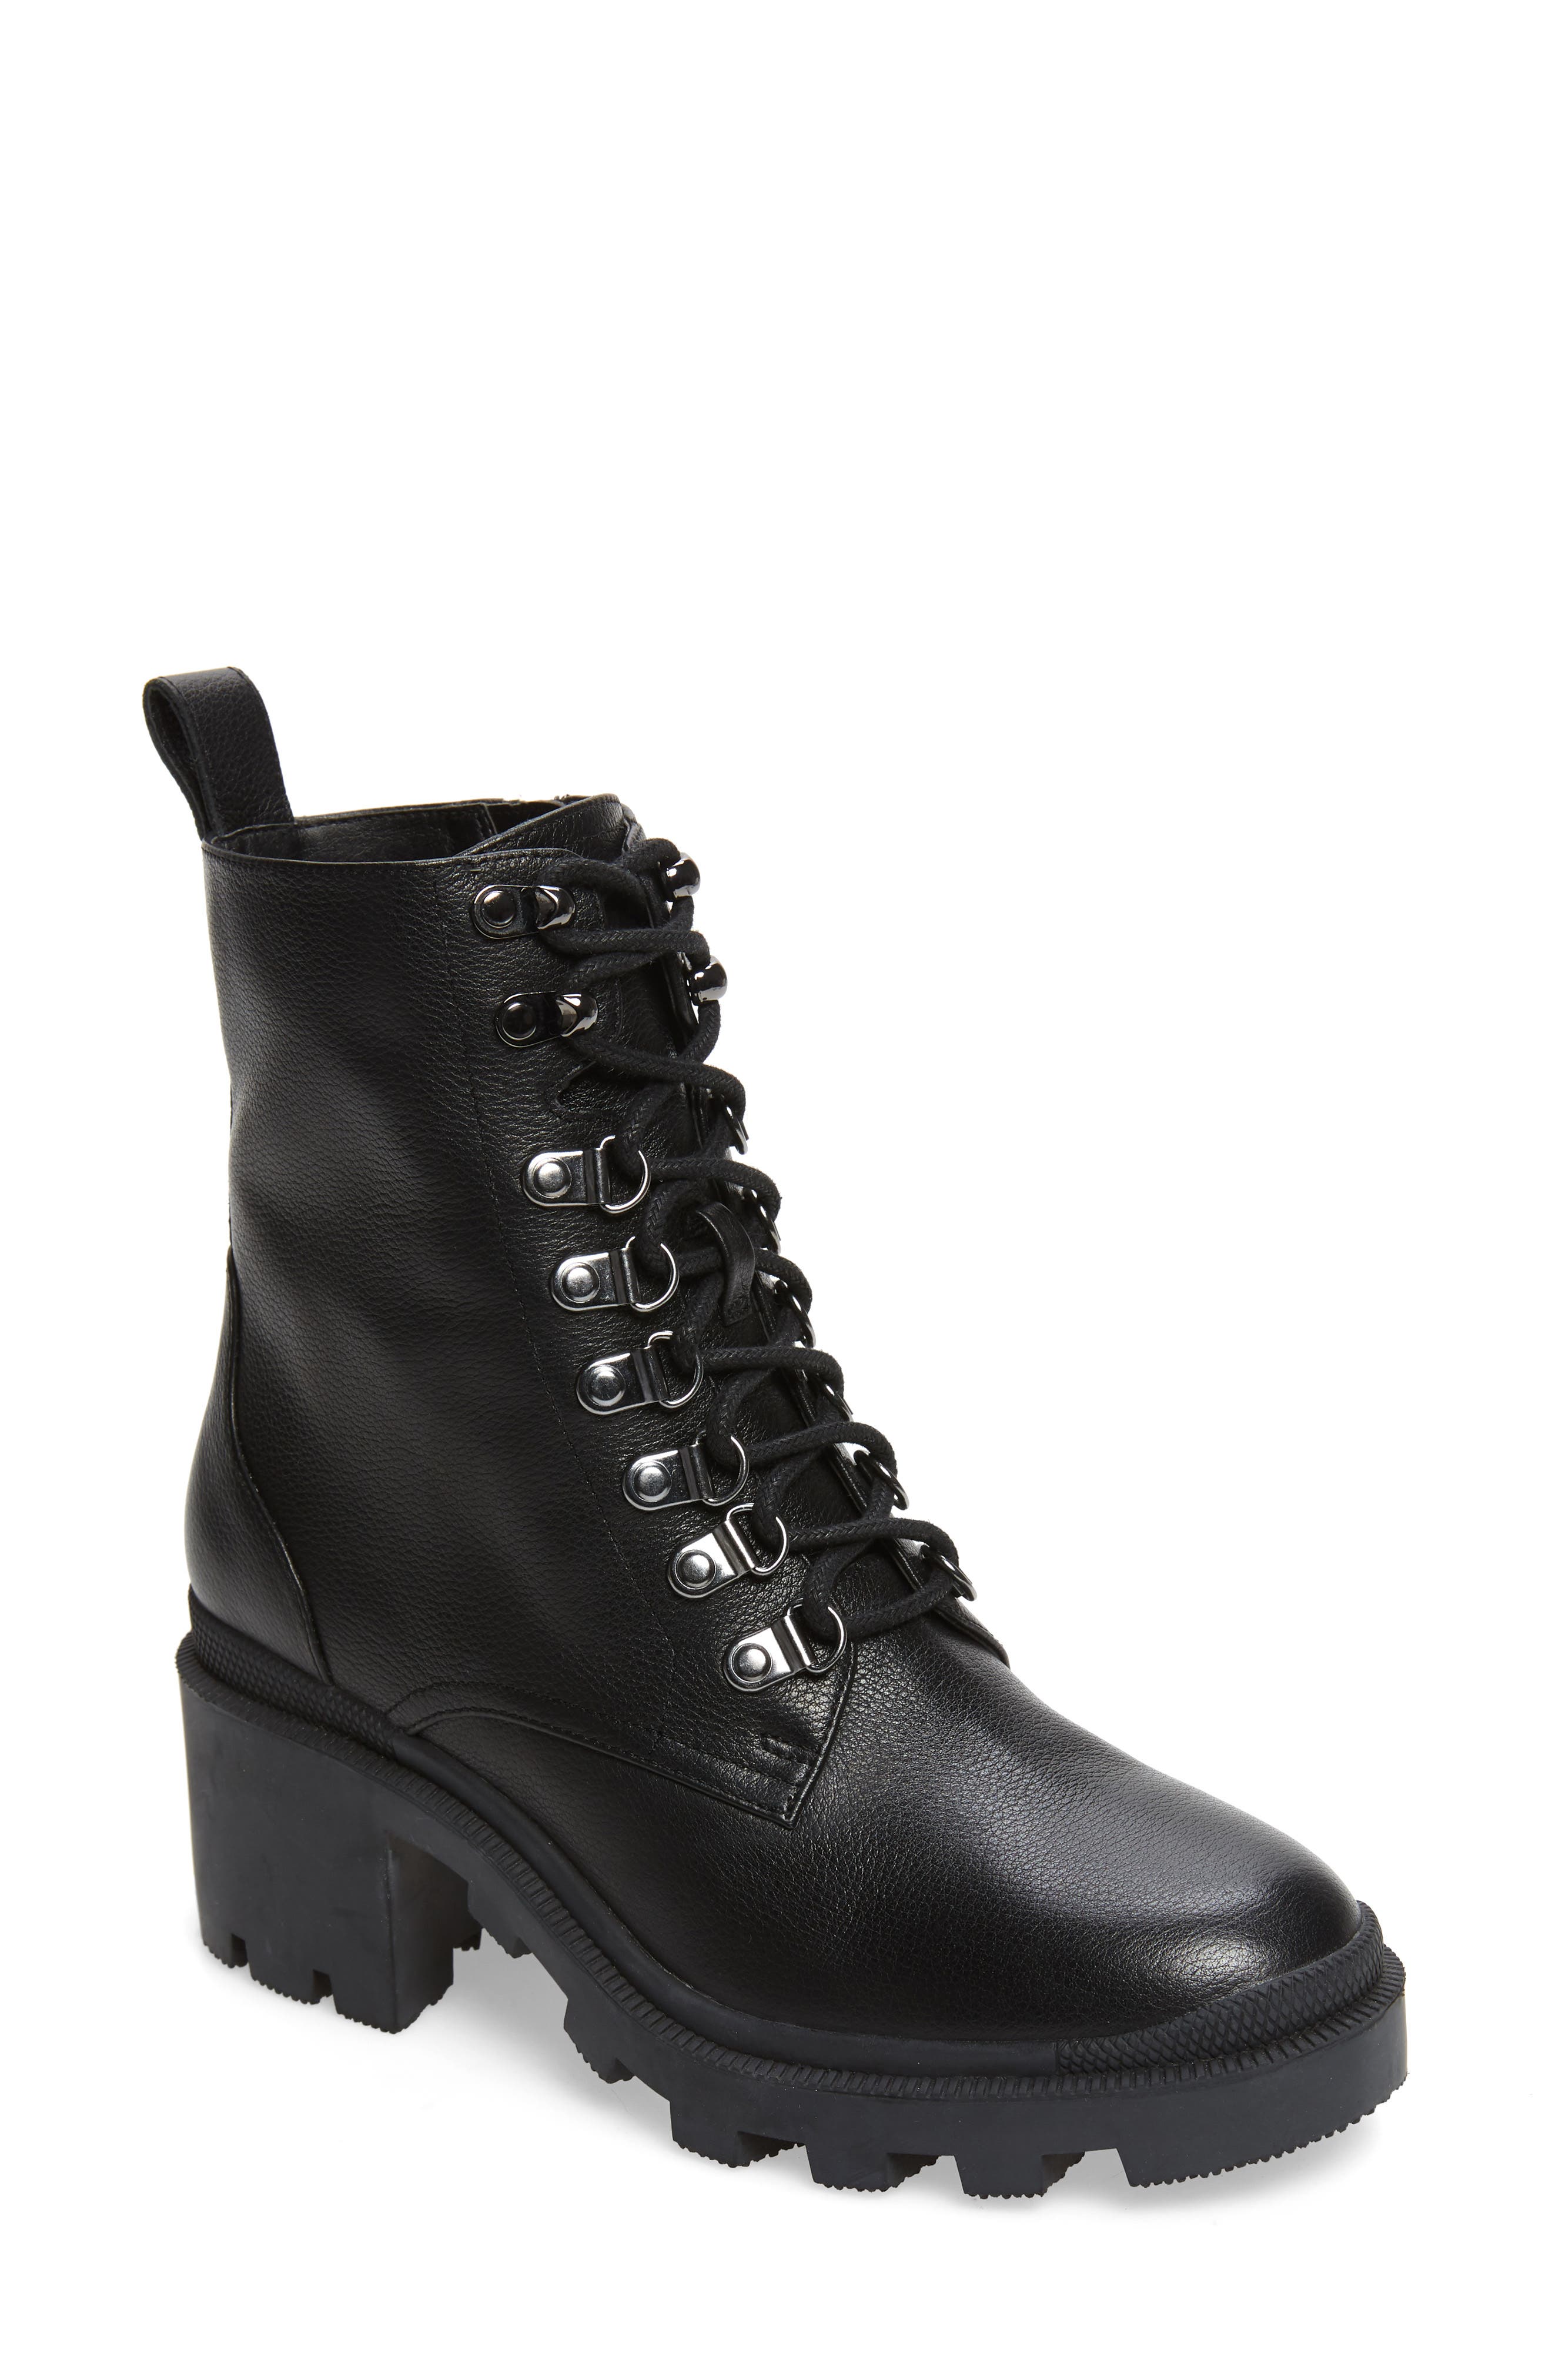 combat boots women with heel